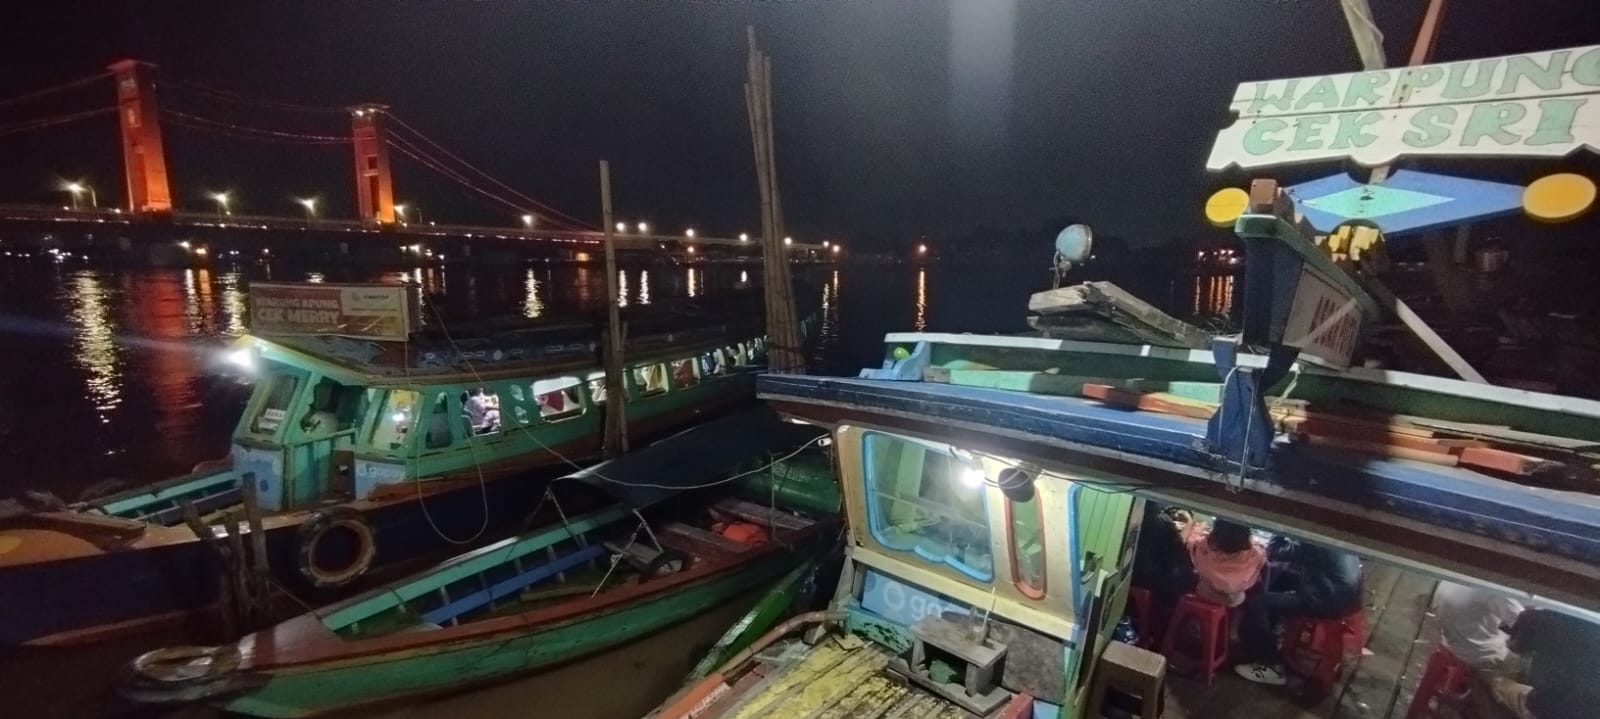 Pempek Perahu Benteng Kuto Besak, Sensasi Kuliner Malam Terapung di Sungai Musi